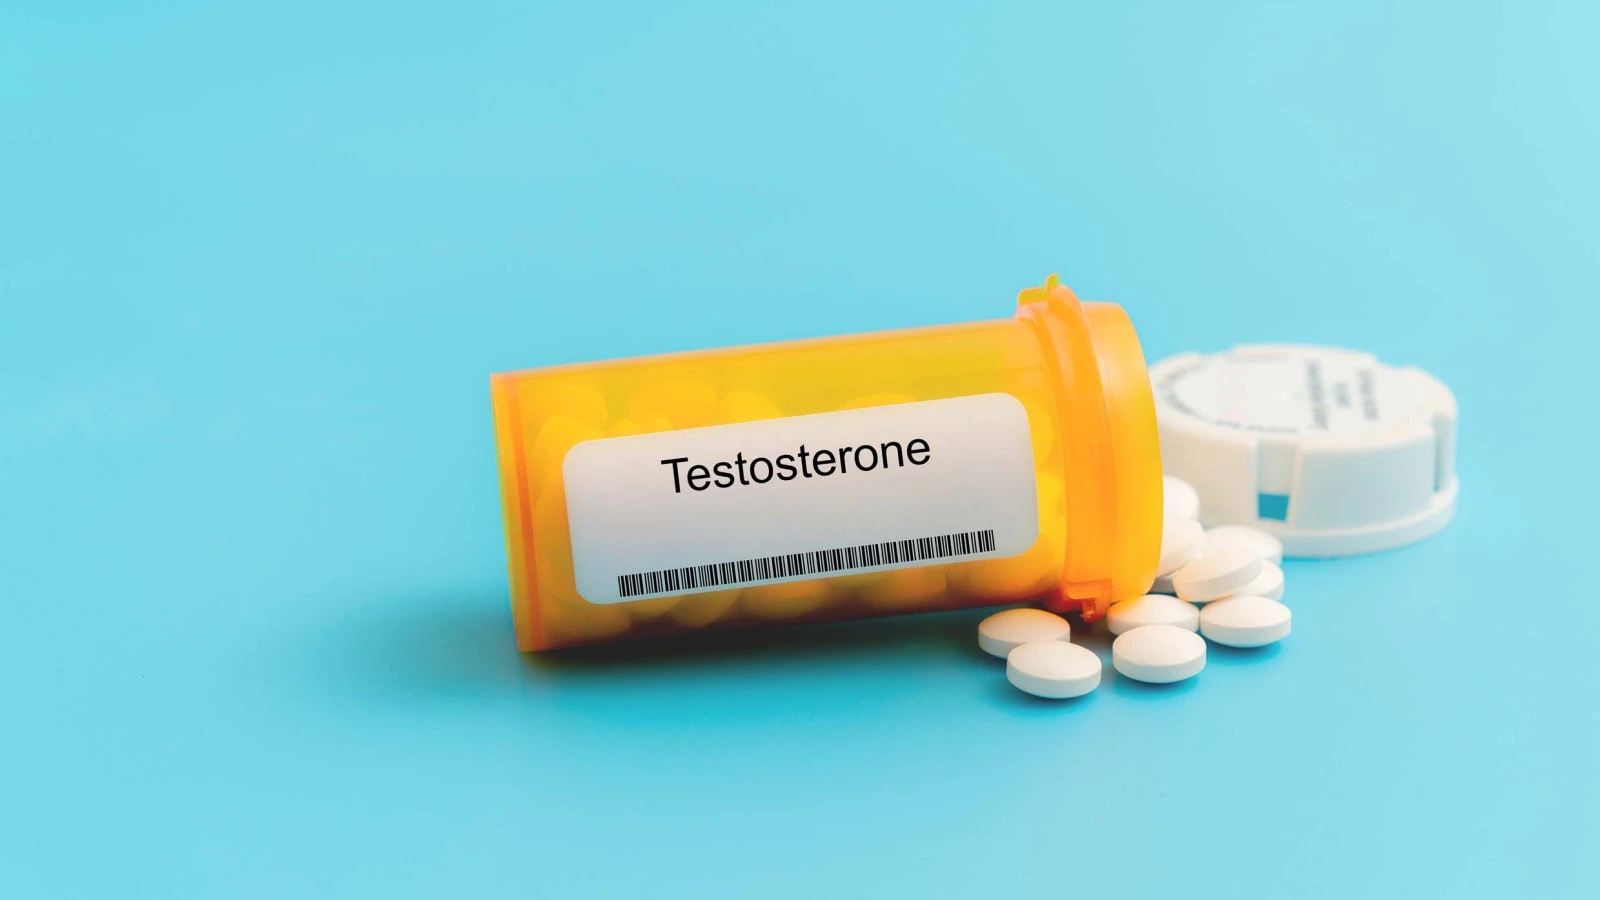 ما هي أعراض نقص هرمون الذكورة التستوستيرون عند الرجال؟ وتأثيره على الانتصاب؟